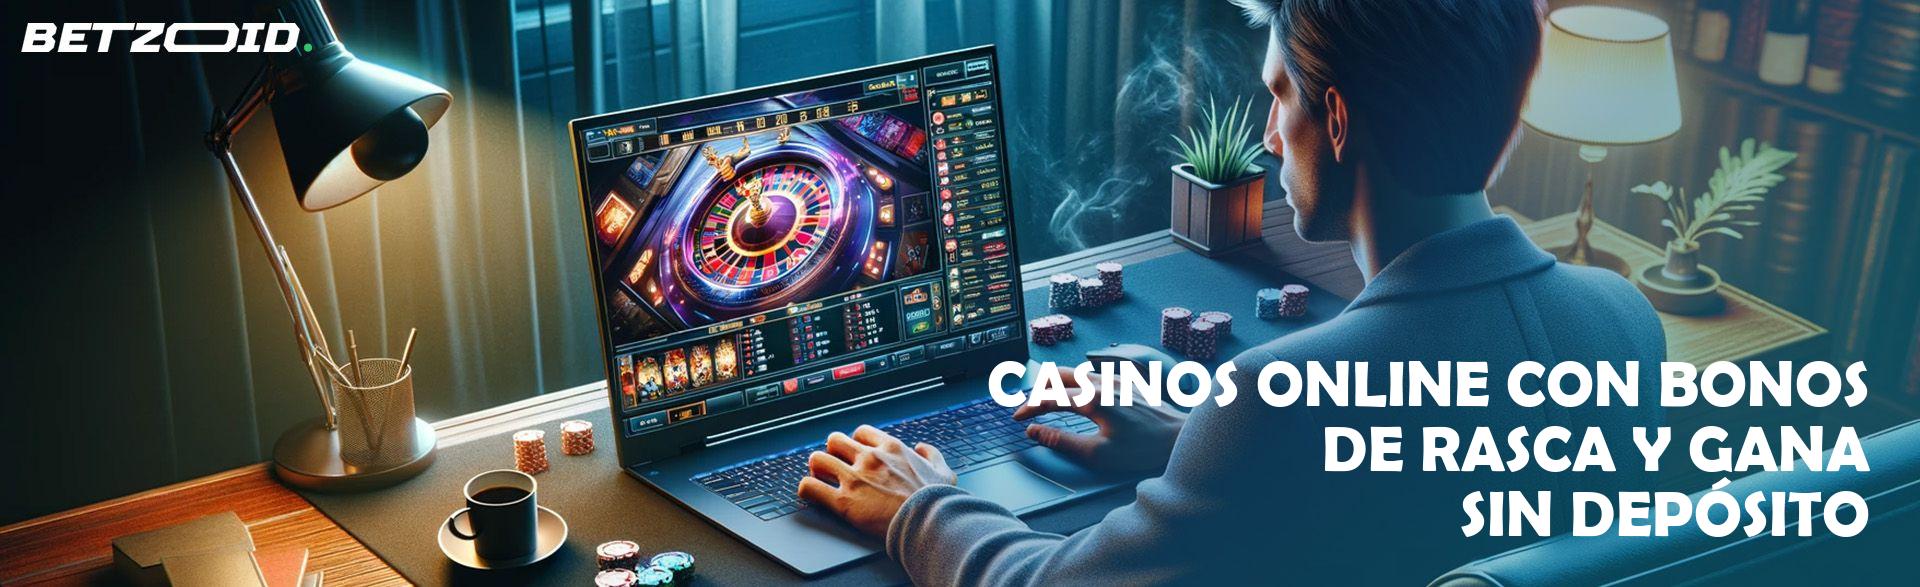 Casinos Online con Bonos de Rasca Y Gana sin Depósito.